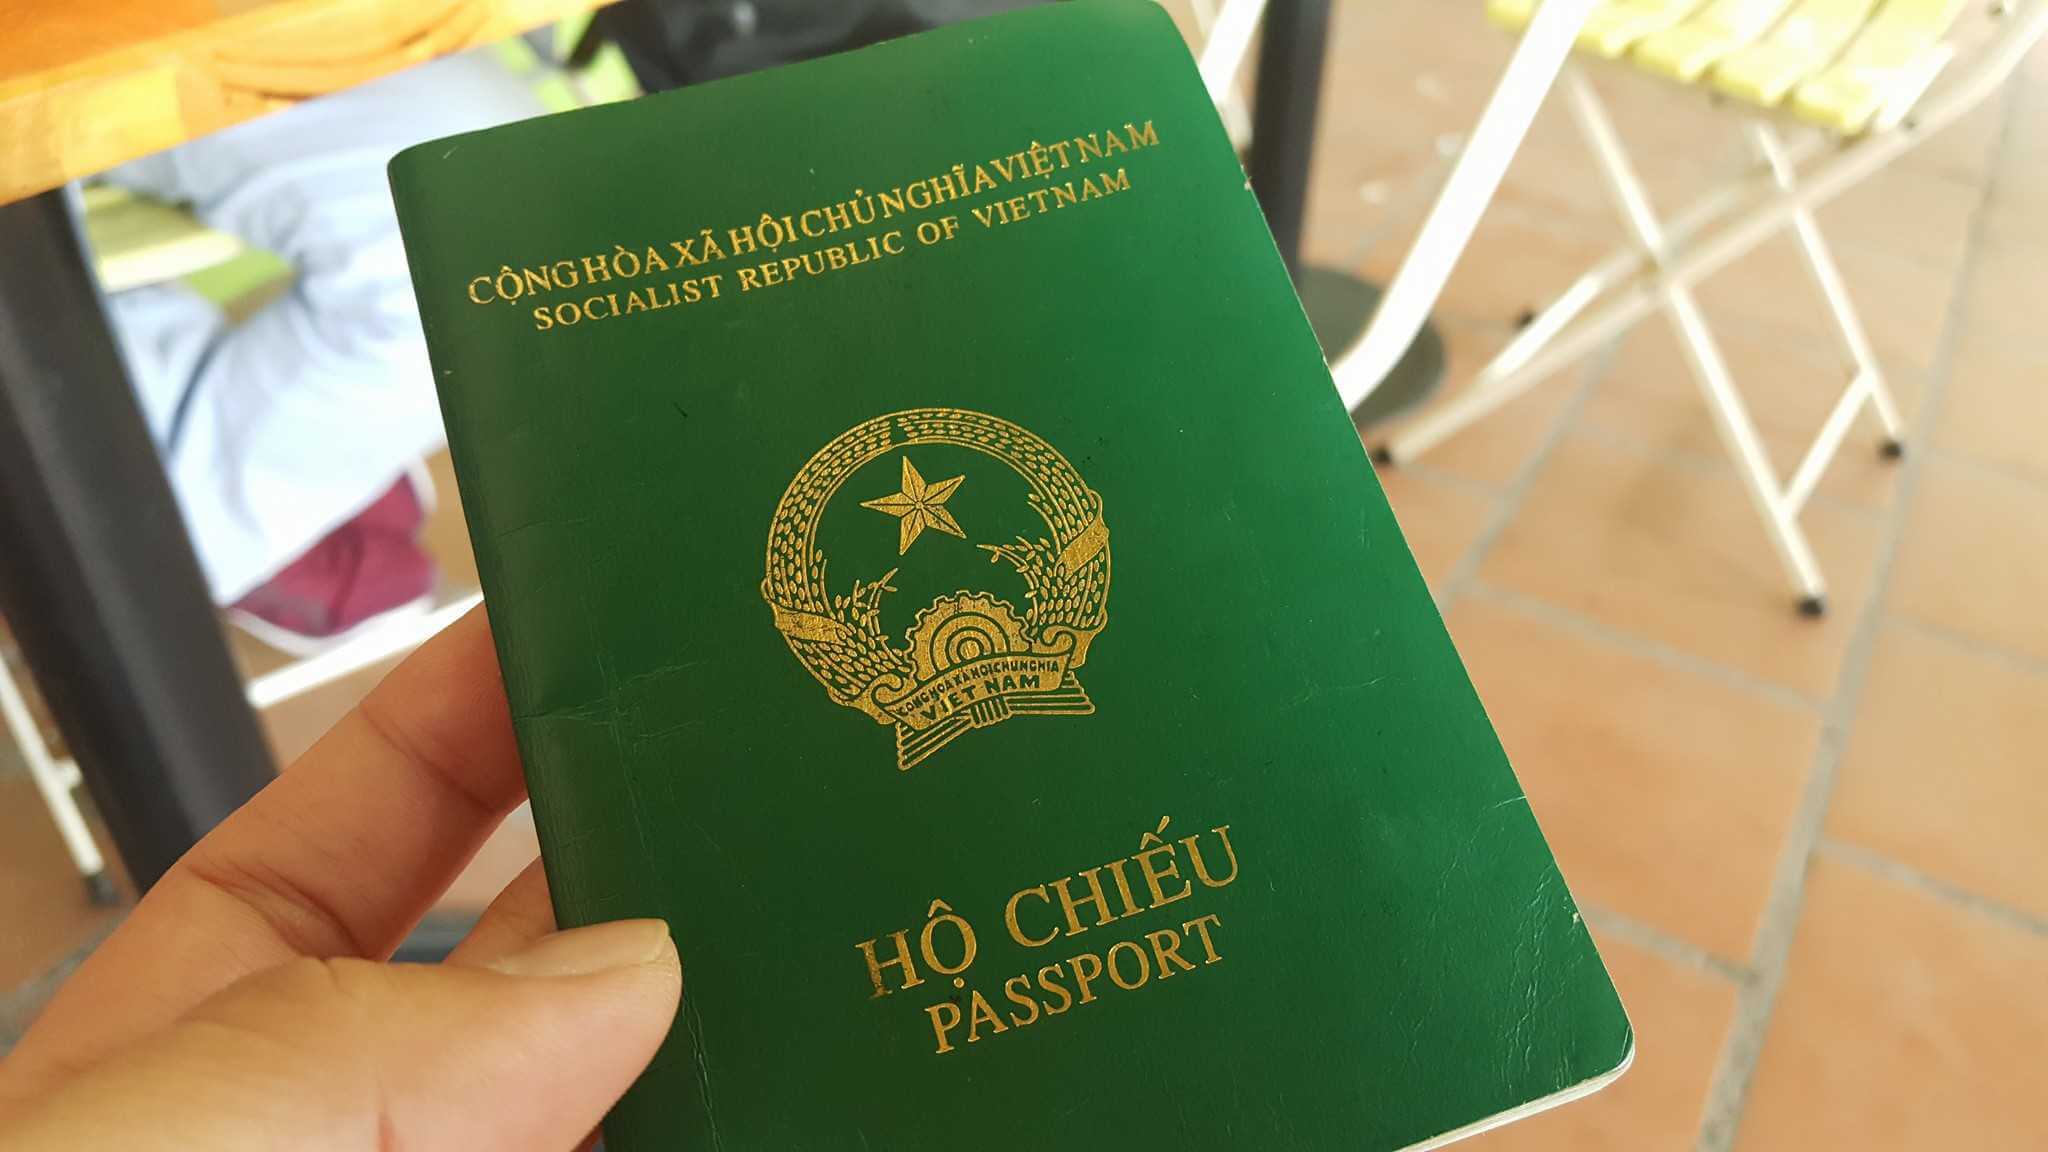 Hộ chiếu, Passport: Loại giấy tờ quan trọng này chính là chìa khóa mở ra nhiều trải nghiệm tuyệt vời khi du lịch tại các quốc gia trên thế giới. Với một hộ chiếu hoàn chỉnh, bạn có thể tự tin khám phá những điểm đến đẹp và thú vị nhất trên toàn cầu.